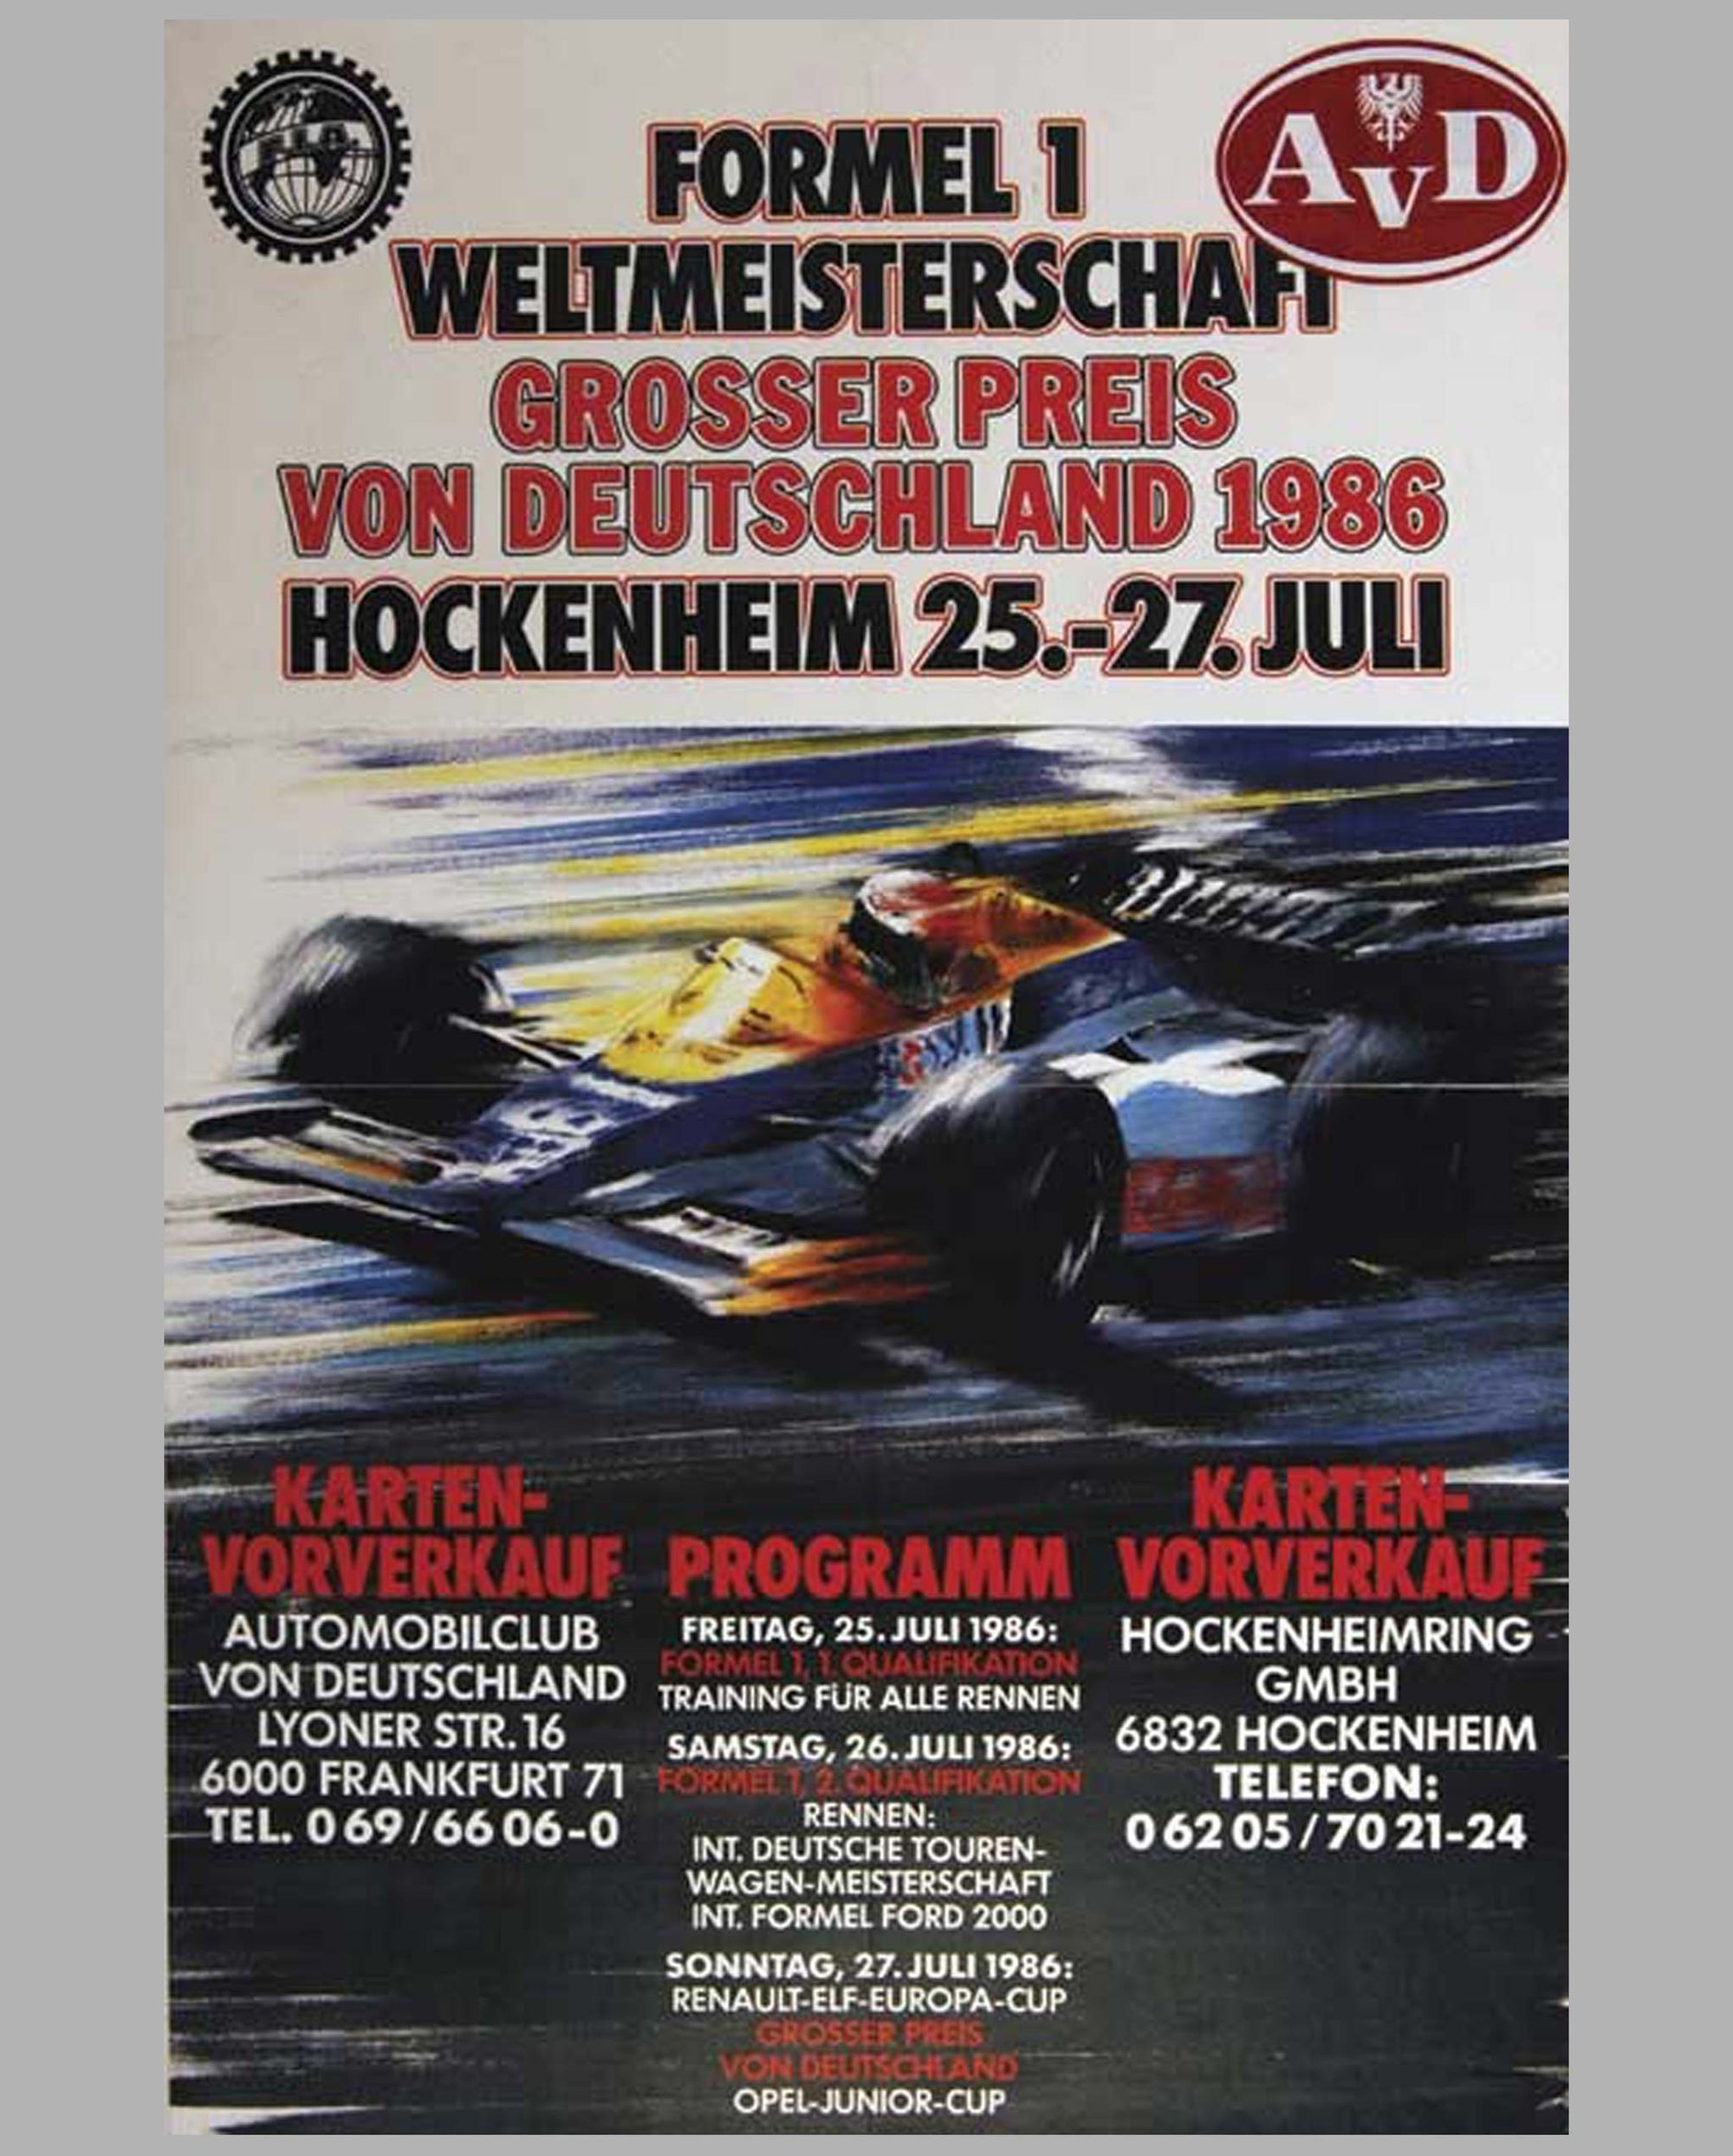 GP Germany - Hockenheim 1986 original official event poster